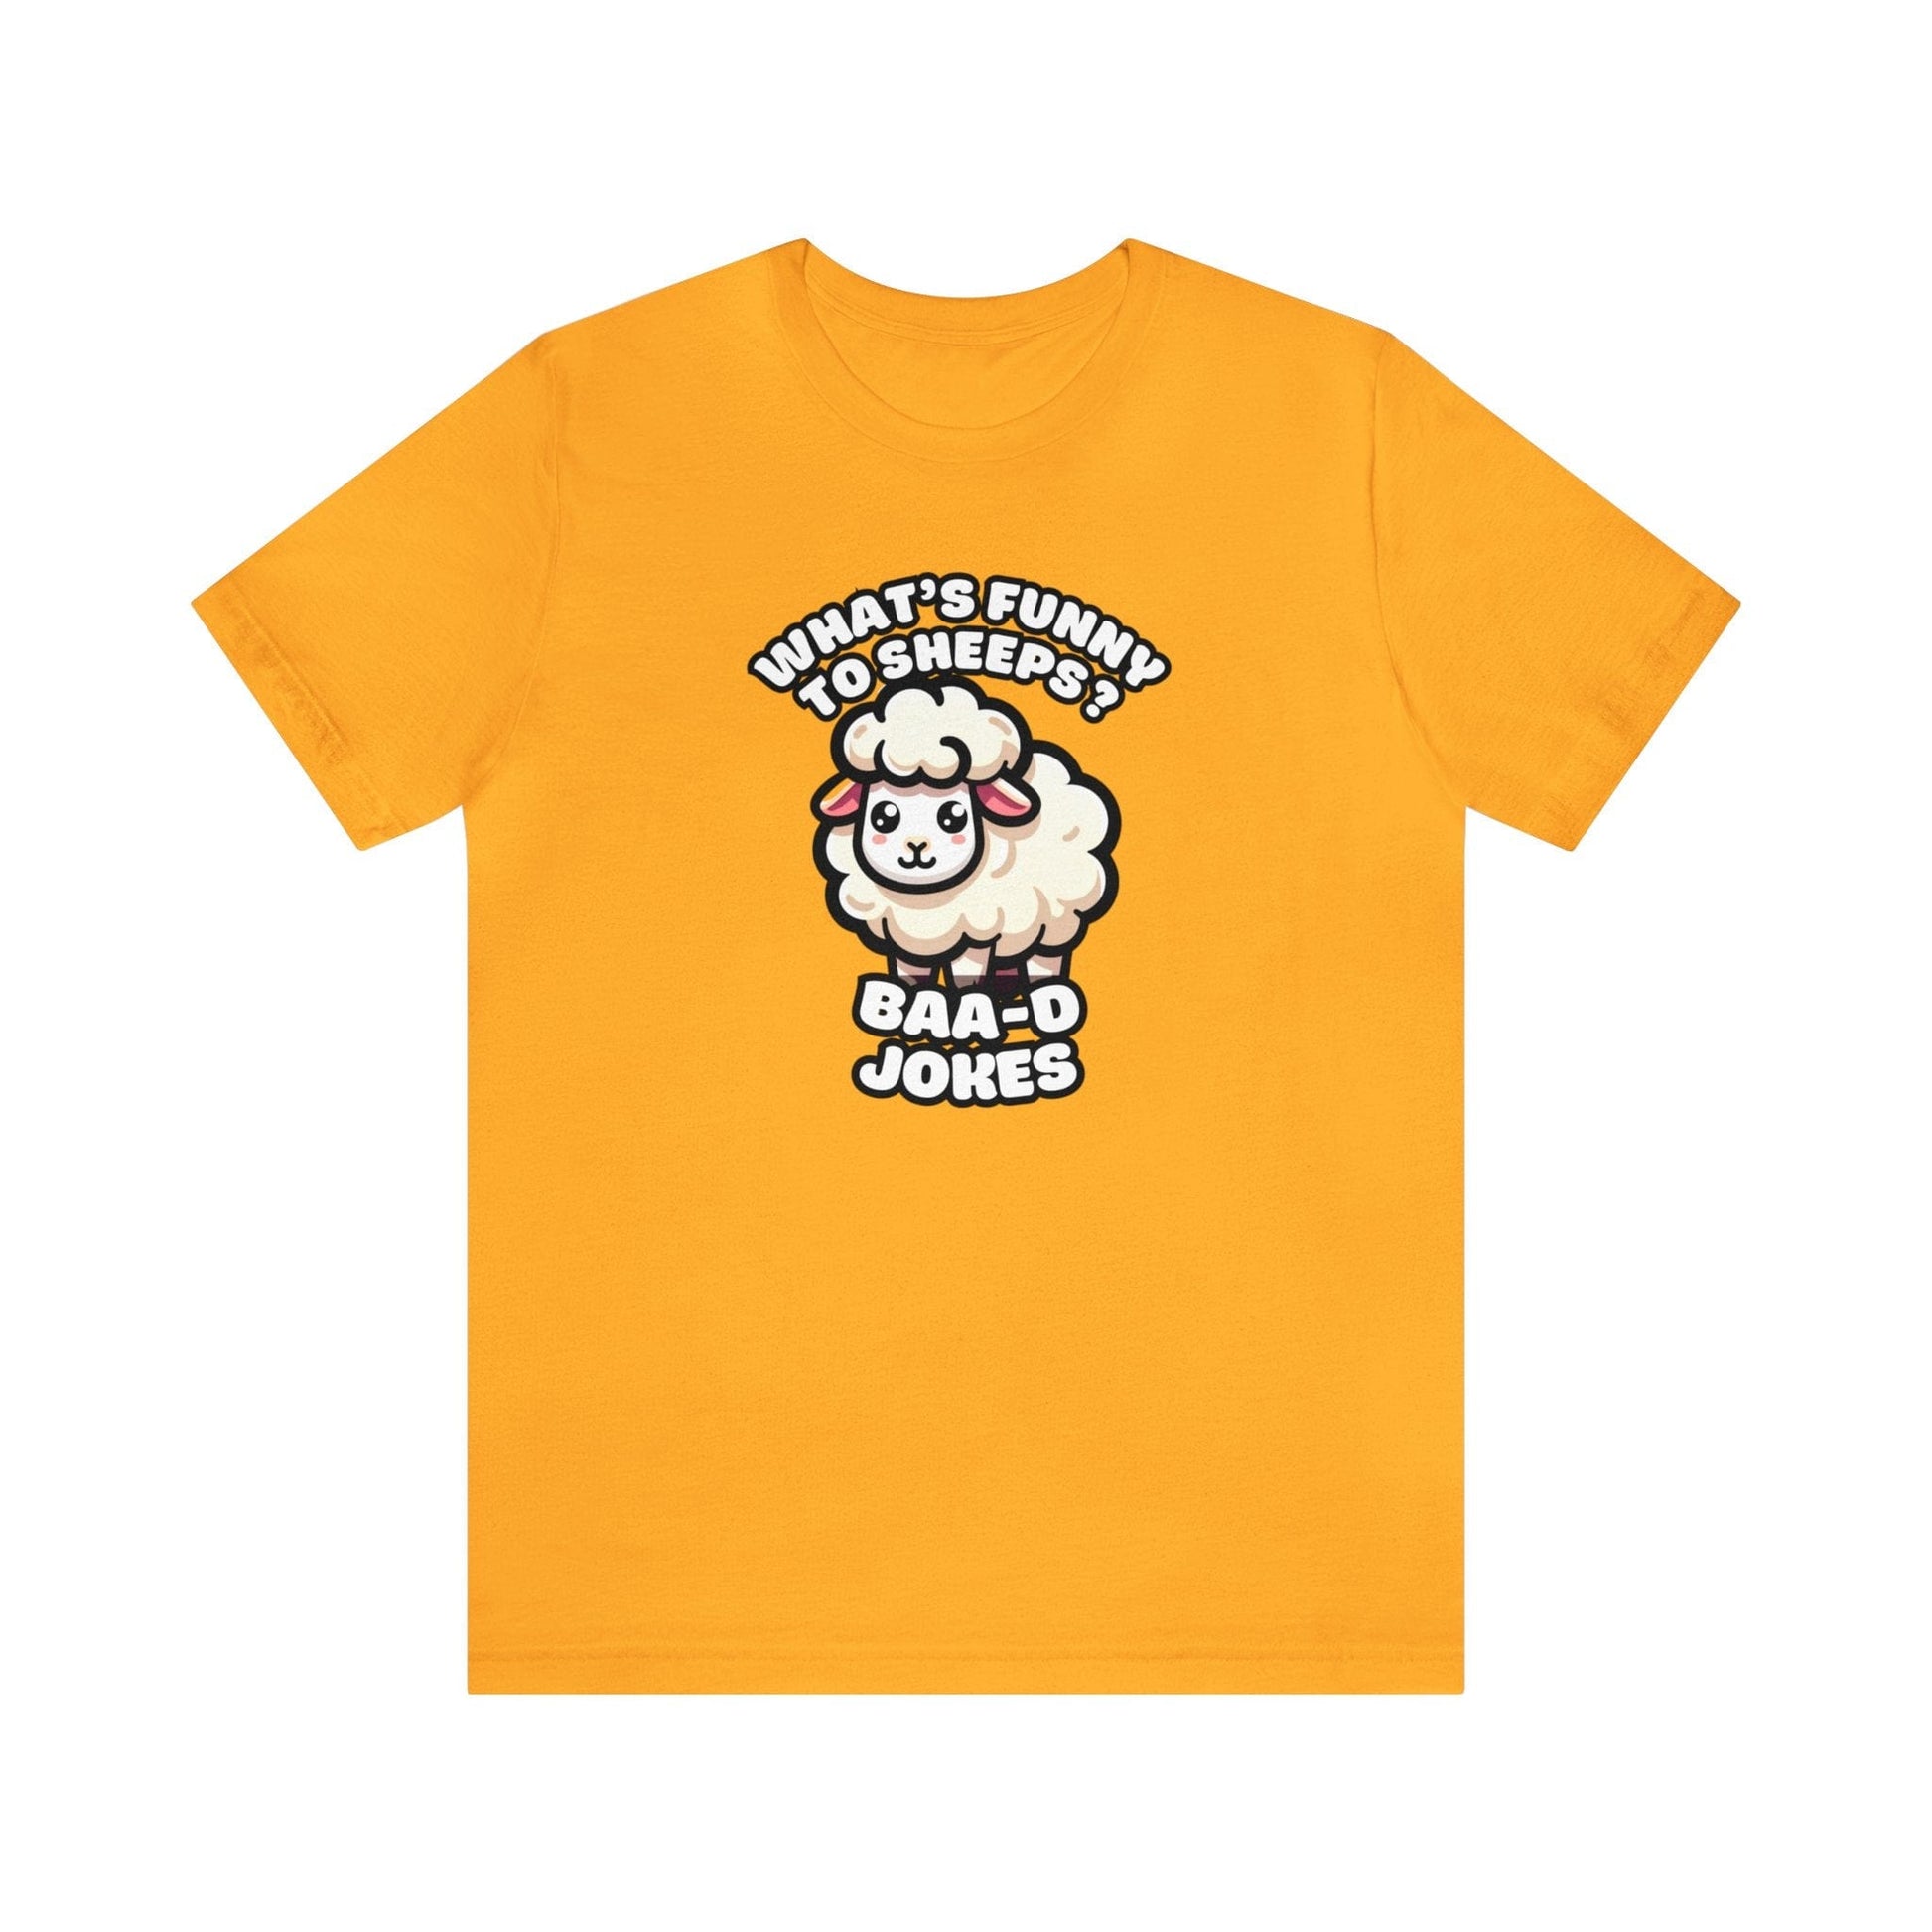 Baa-d Jokes - Sheep T-shirt